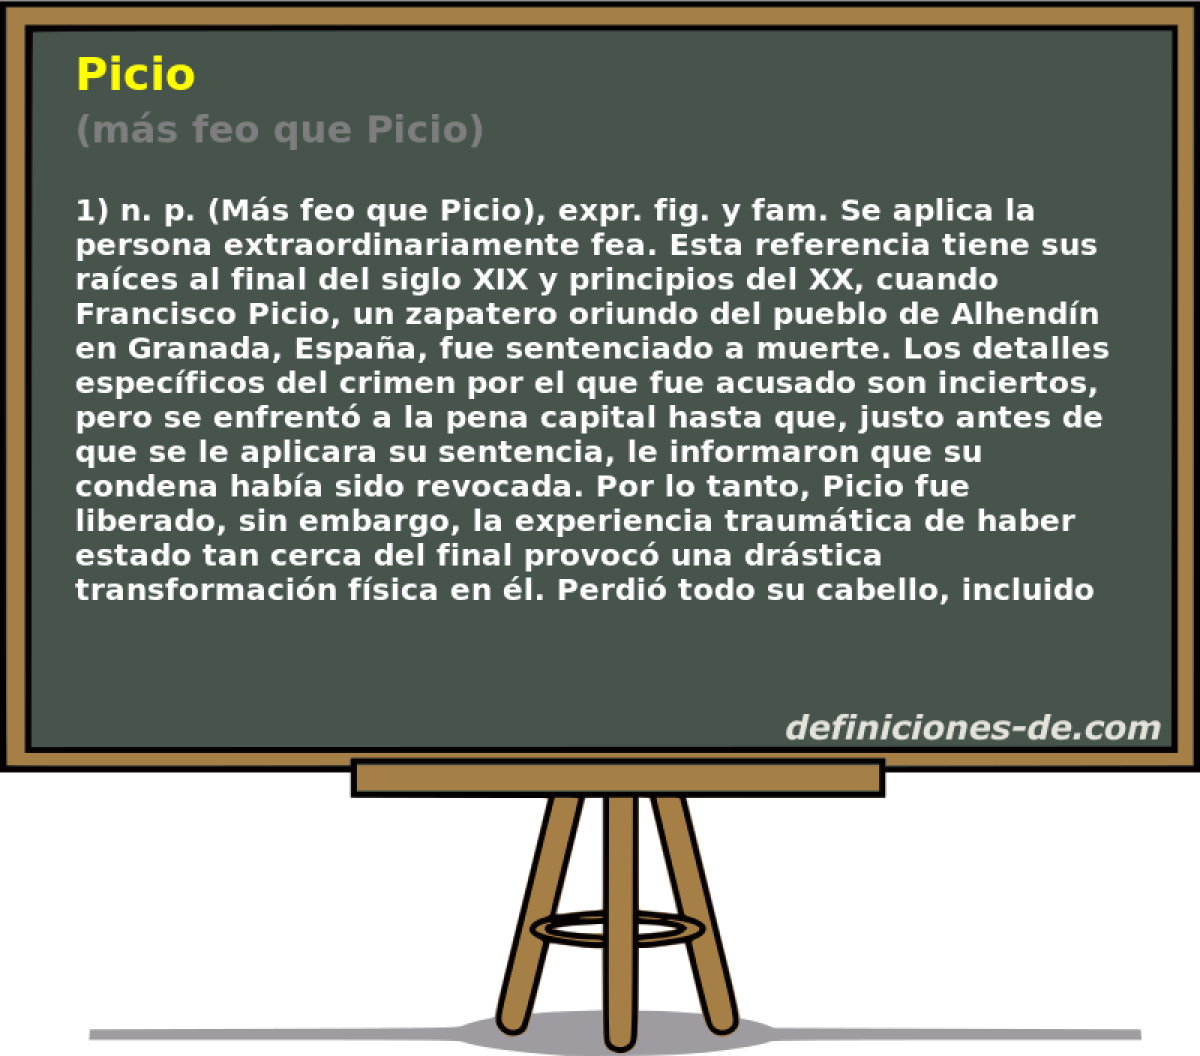 Picio (ms feo que Picio)